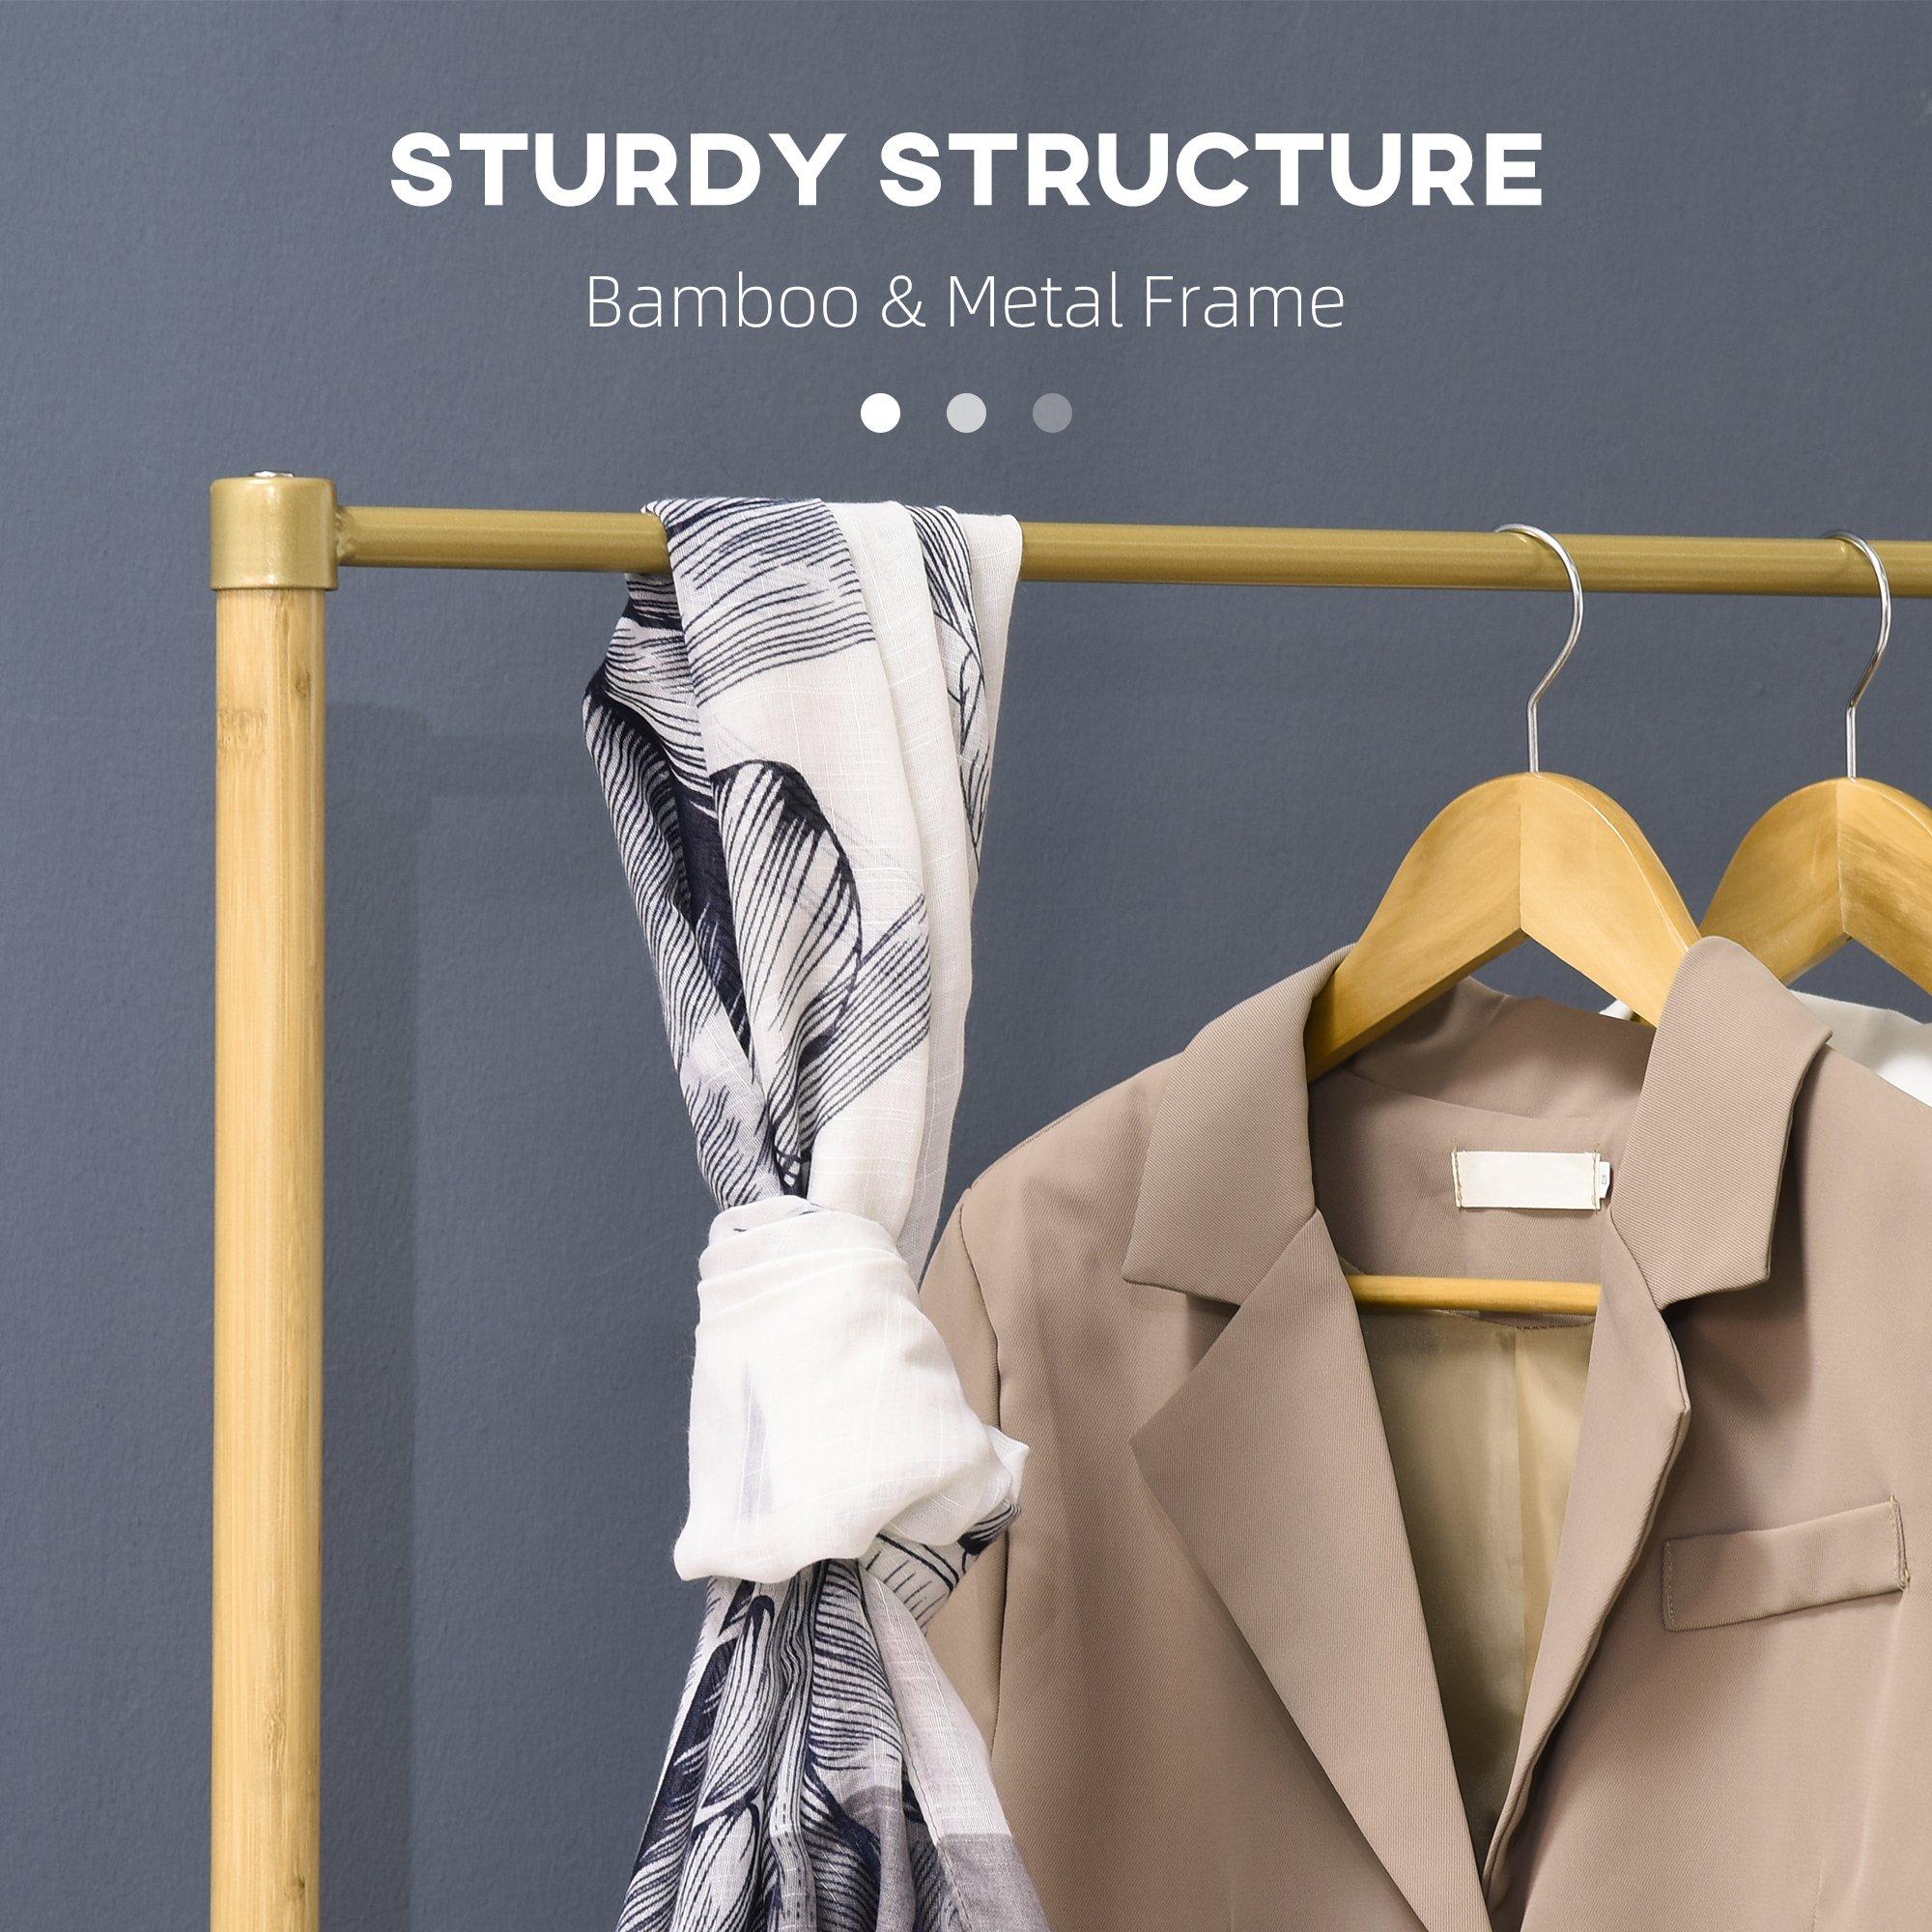 HOMCOM Bamboo Garment Rack, Clothes Rack with Storage Shelf